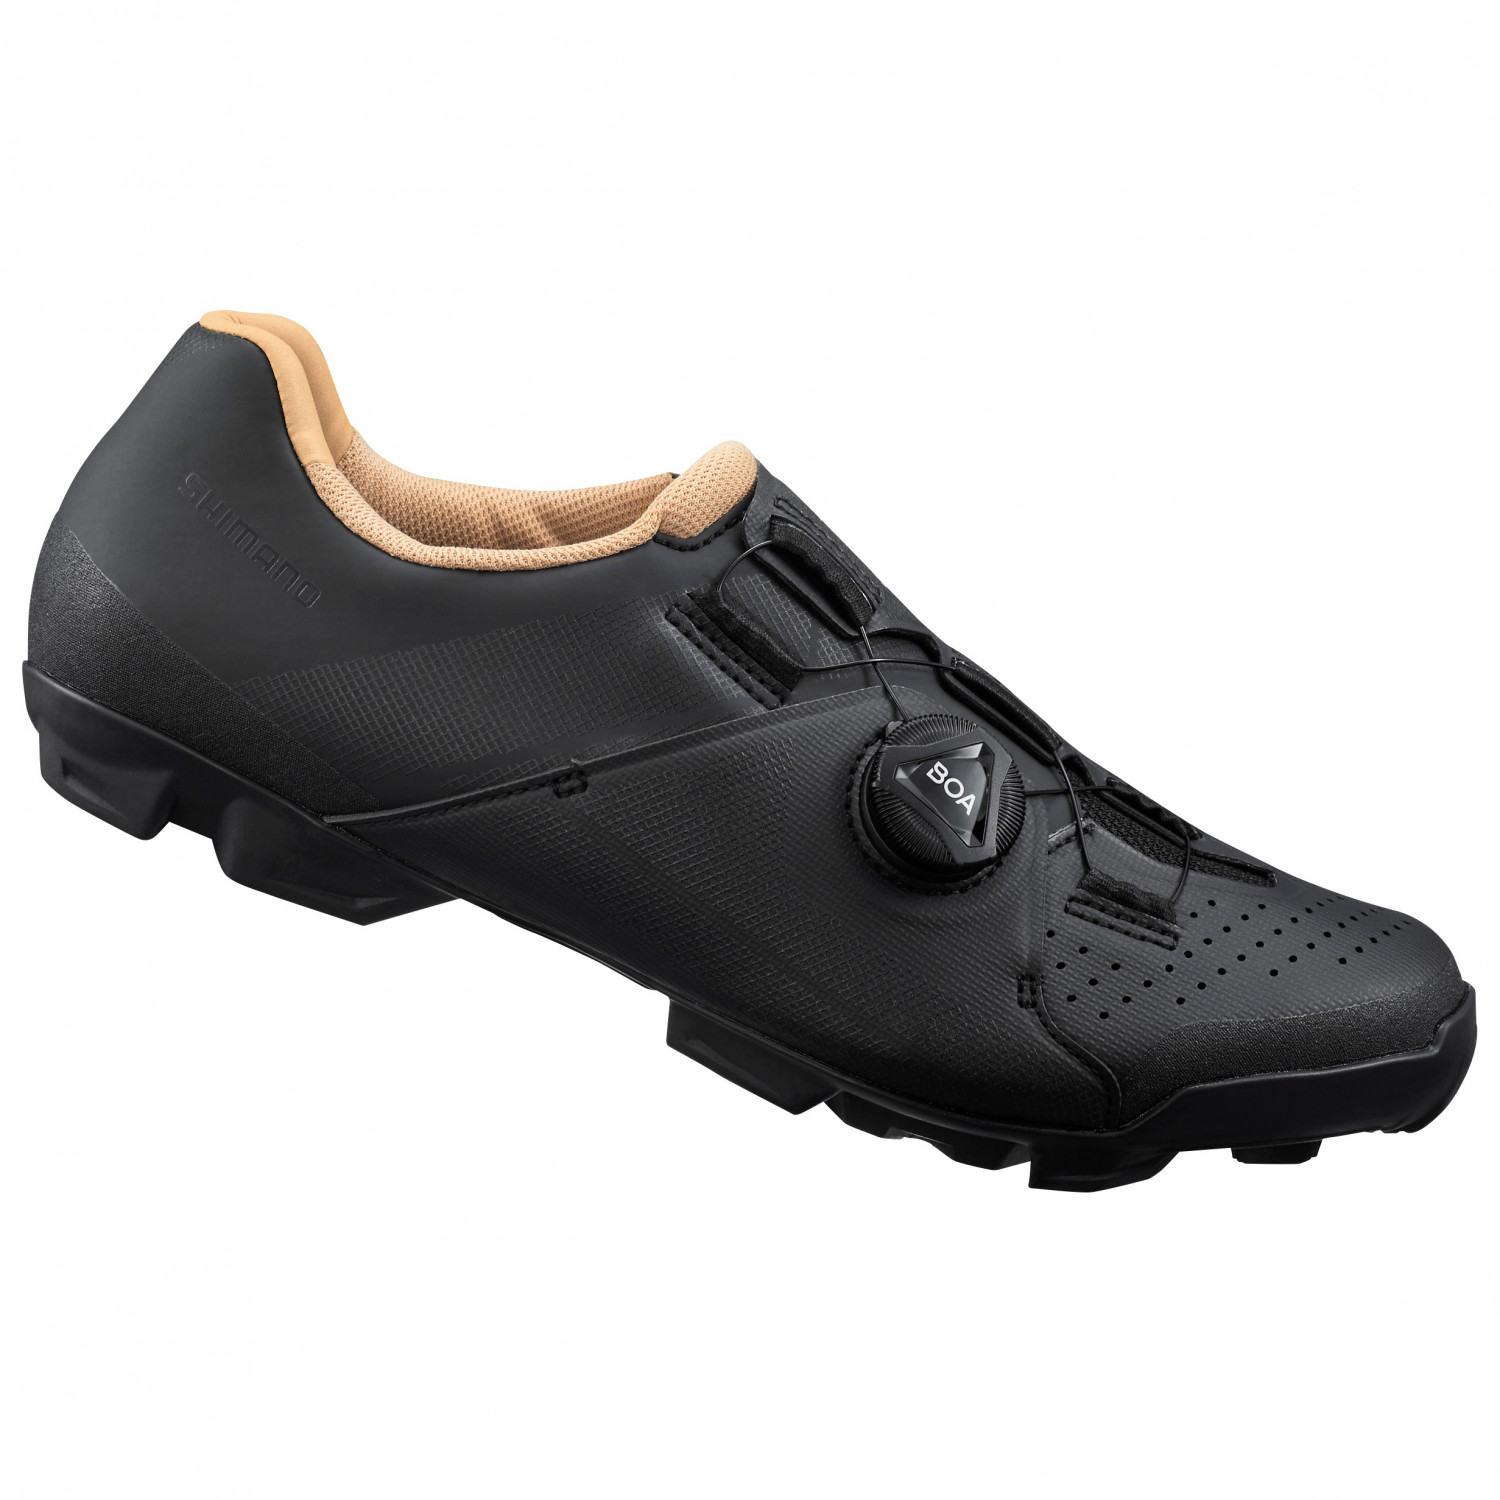 Велосипедная обувь Shimano Women's SH XC3 Cross Country Schuhe, черный